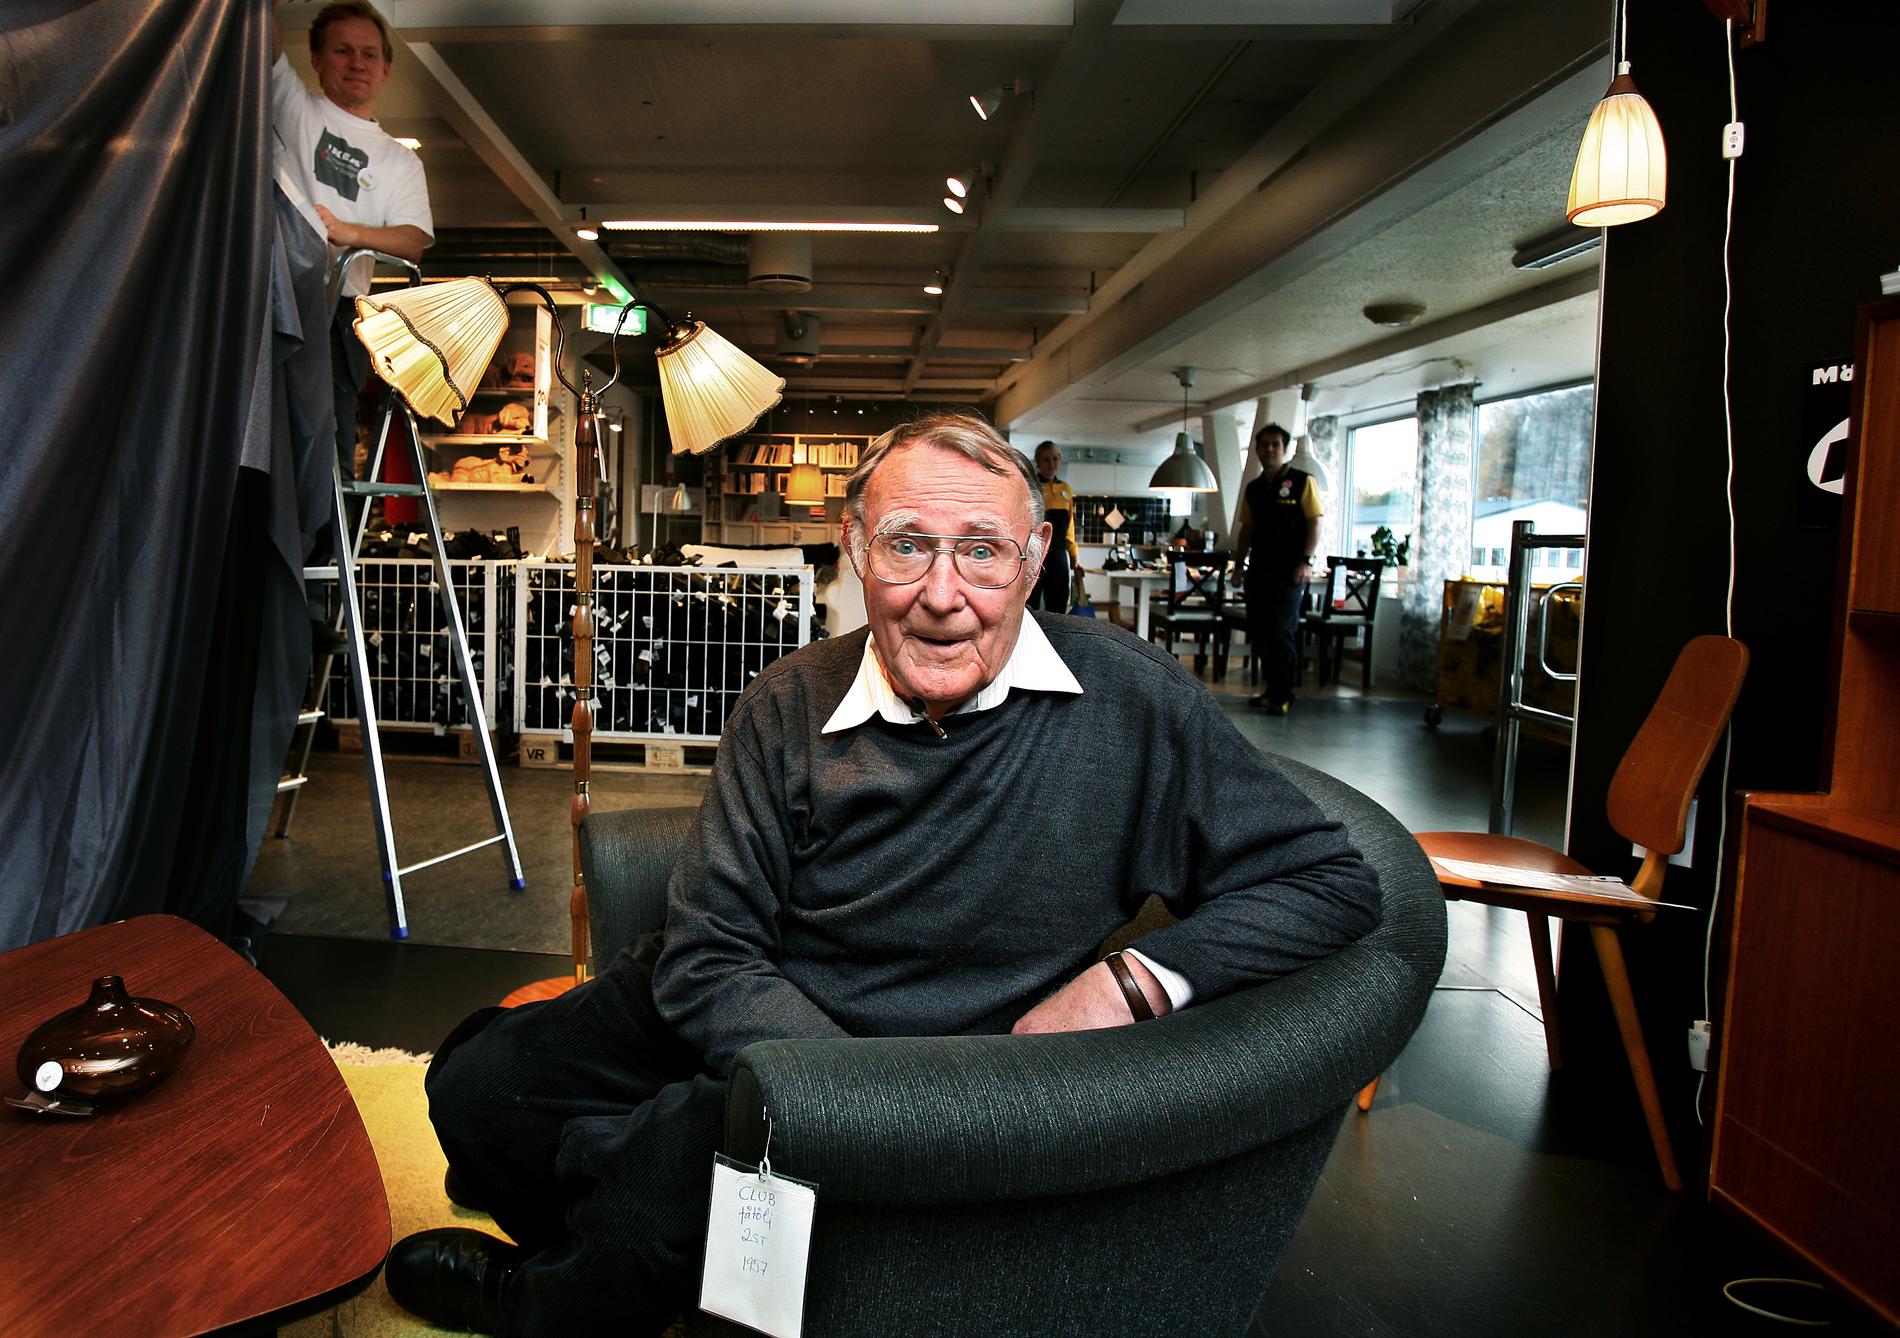 Ingvar Kamprad, Senior advisor och grundare av möbelvaruhuset IKEA. På första IKEA varuhuset i Älmhult. Här sitter Ingvar i sin favoritfåtölj från 50-talet, i den lilla specialhörnan med äldre möbler inför 50-års jubileet.